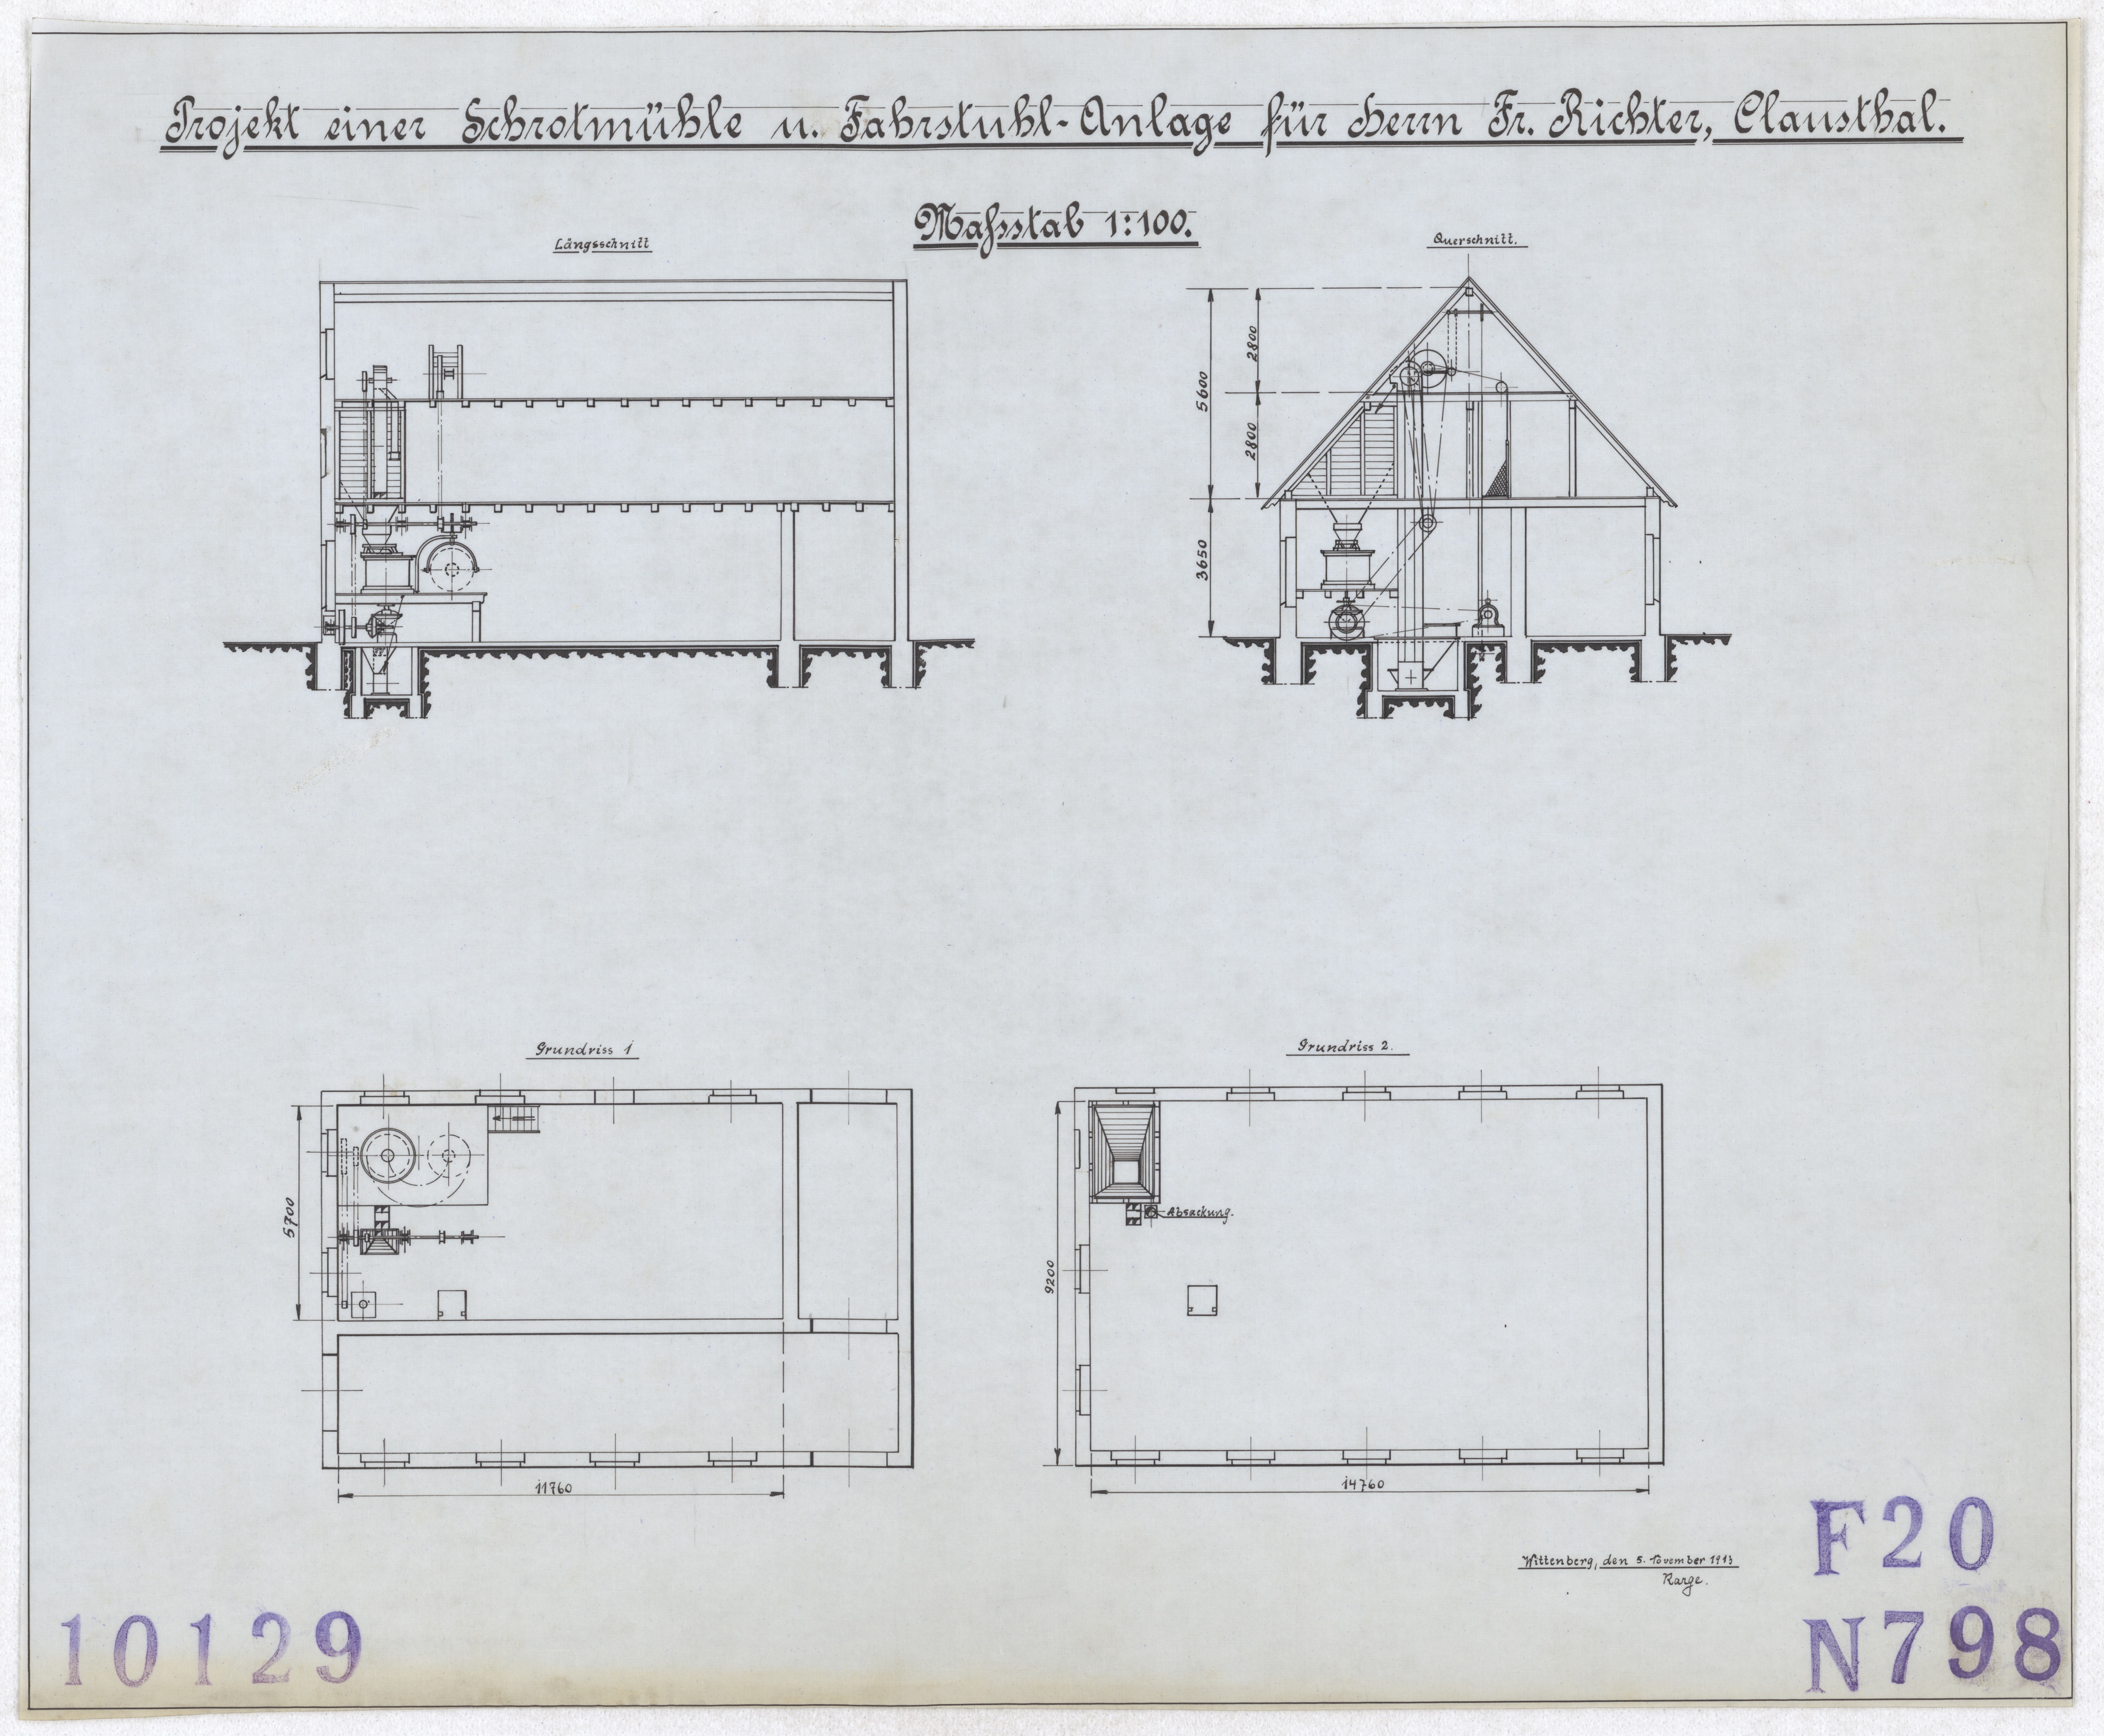 Technische Zeichnung : Projekt einer Schrotmühle  und Fahrstuhl-Anlage für Herrn Fr. Richter, Clausthal (Stiftung Deutsches Technikmuseum Berlin CC BY-SA)